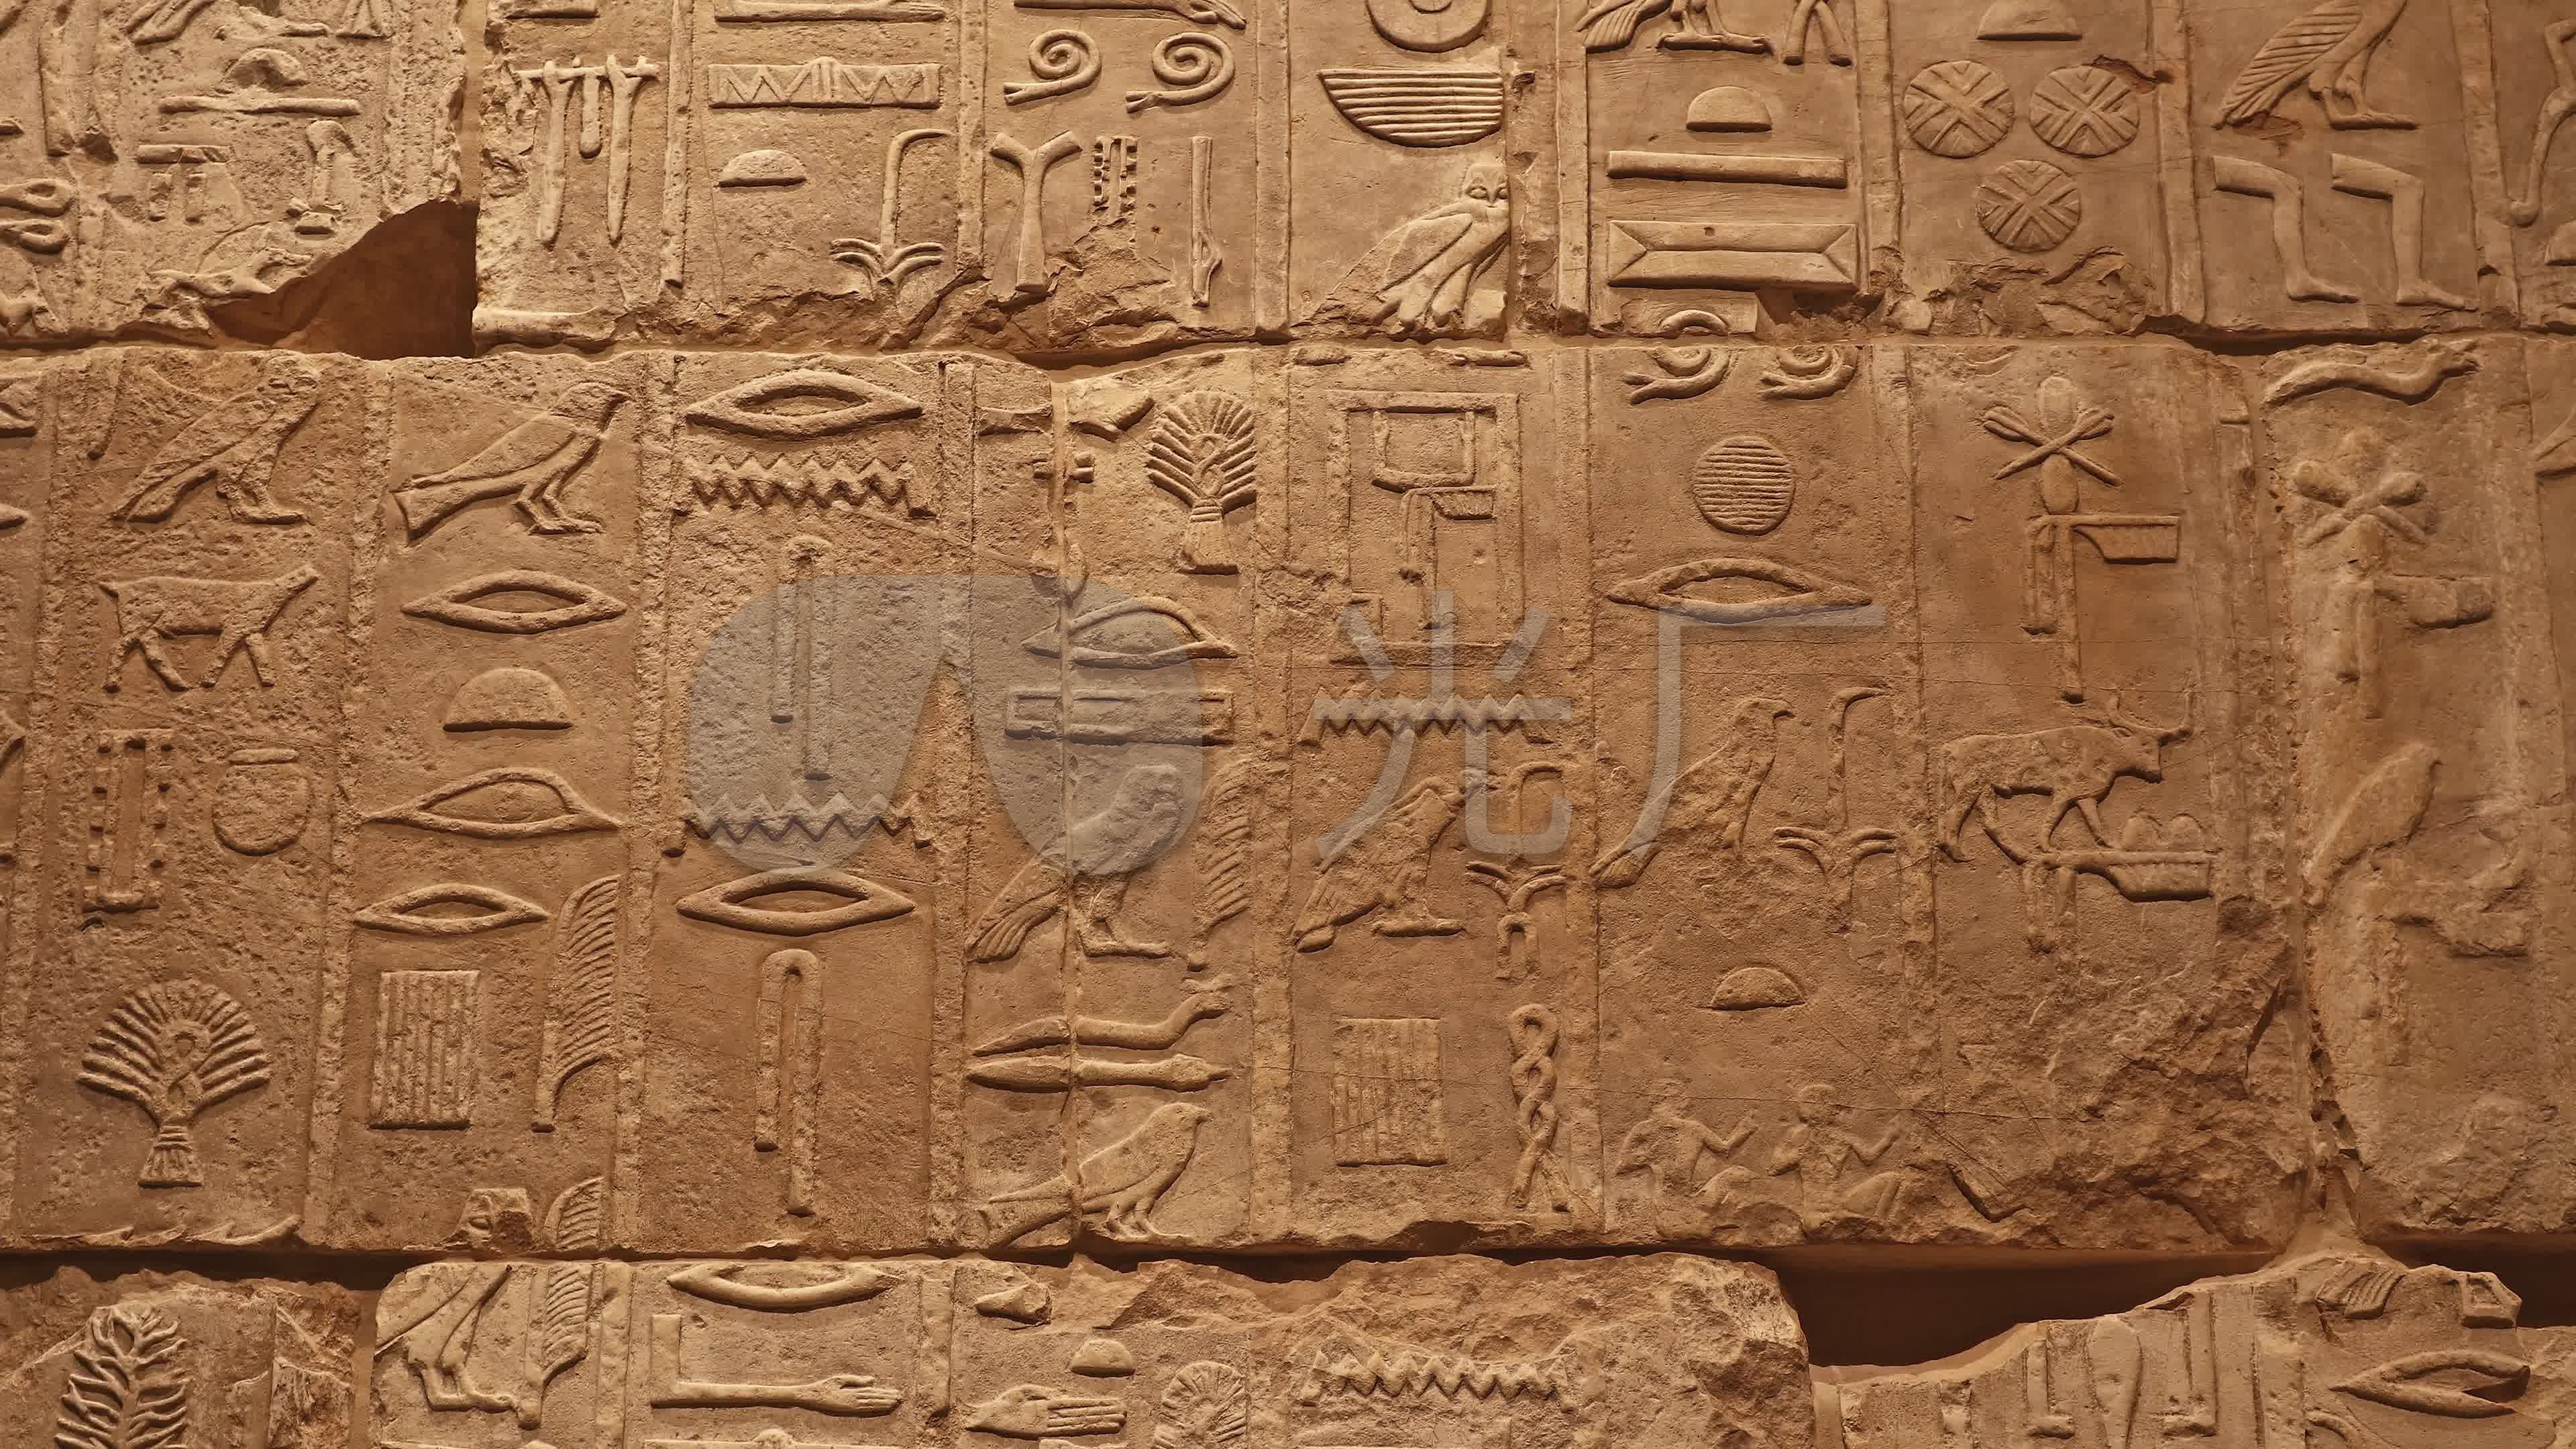 古埃及文字的埃及象形文字 编辑类库存图片. 图片 包括有 文化, 艺术性, 图画, 过去, 图象, 中间 - 194808959